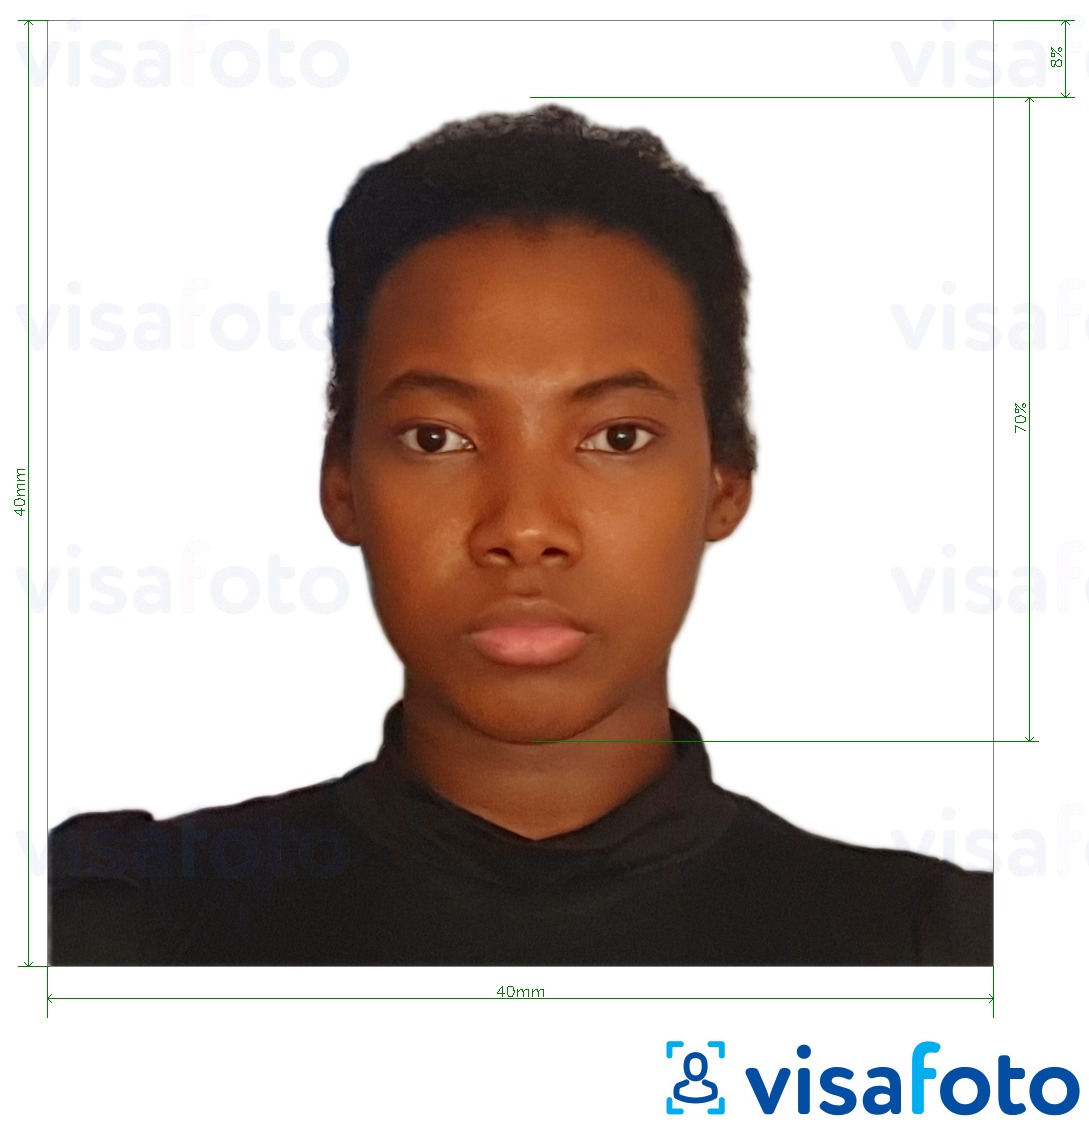 马达加斯加身份证40x40毫米 的标准尺寸照片示例